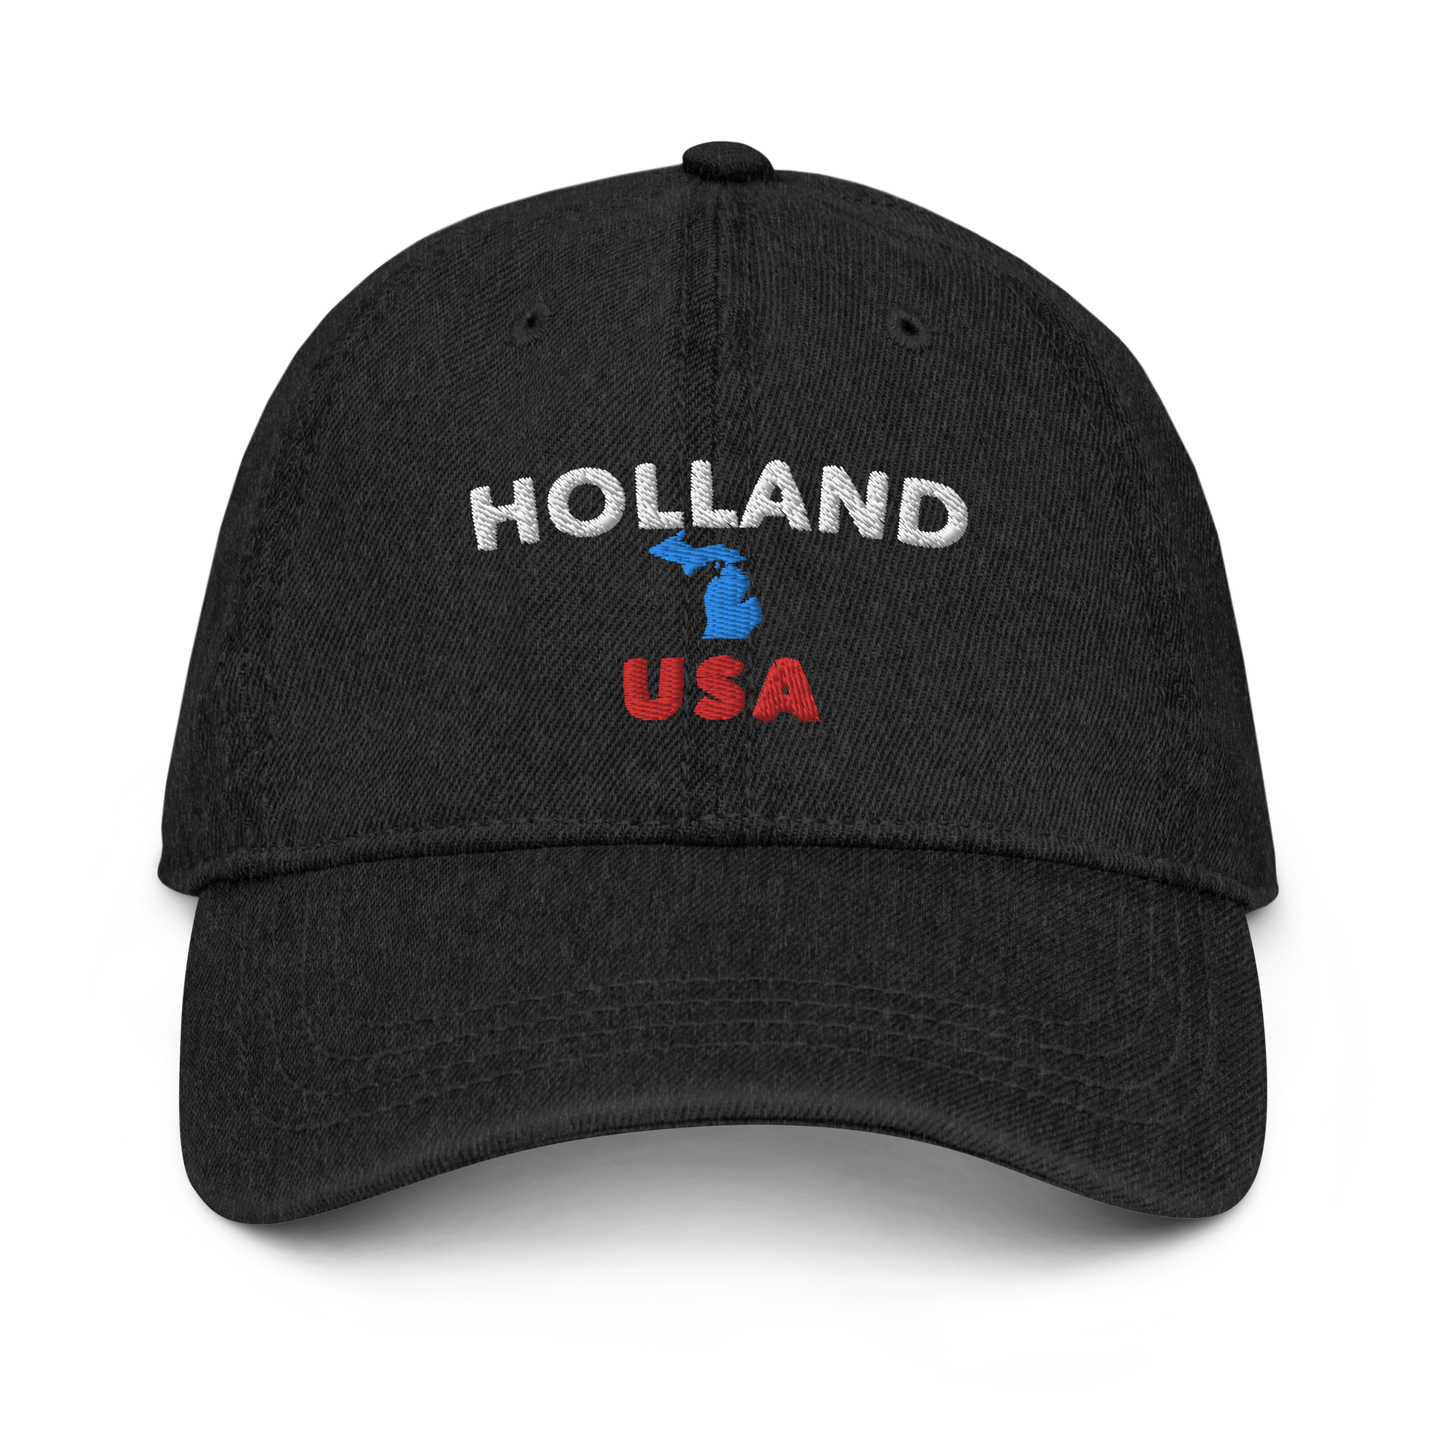 'Holland USA' Denim Baseball Cap (w/ Michigan Outline)